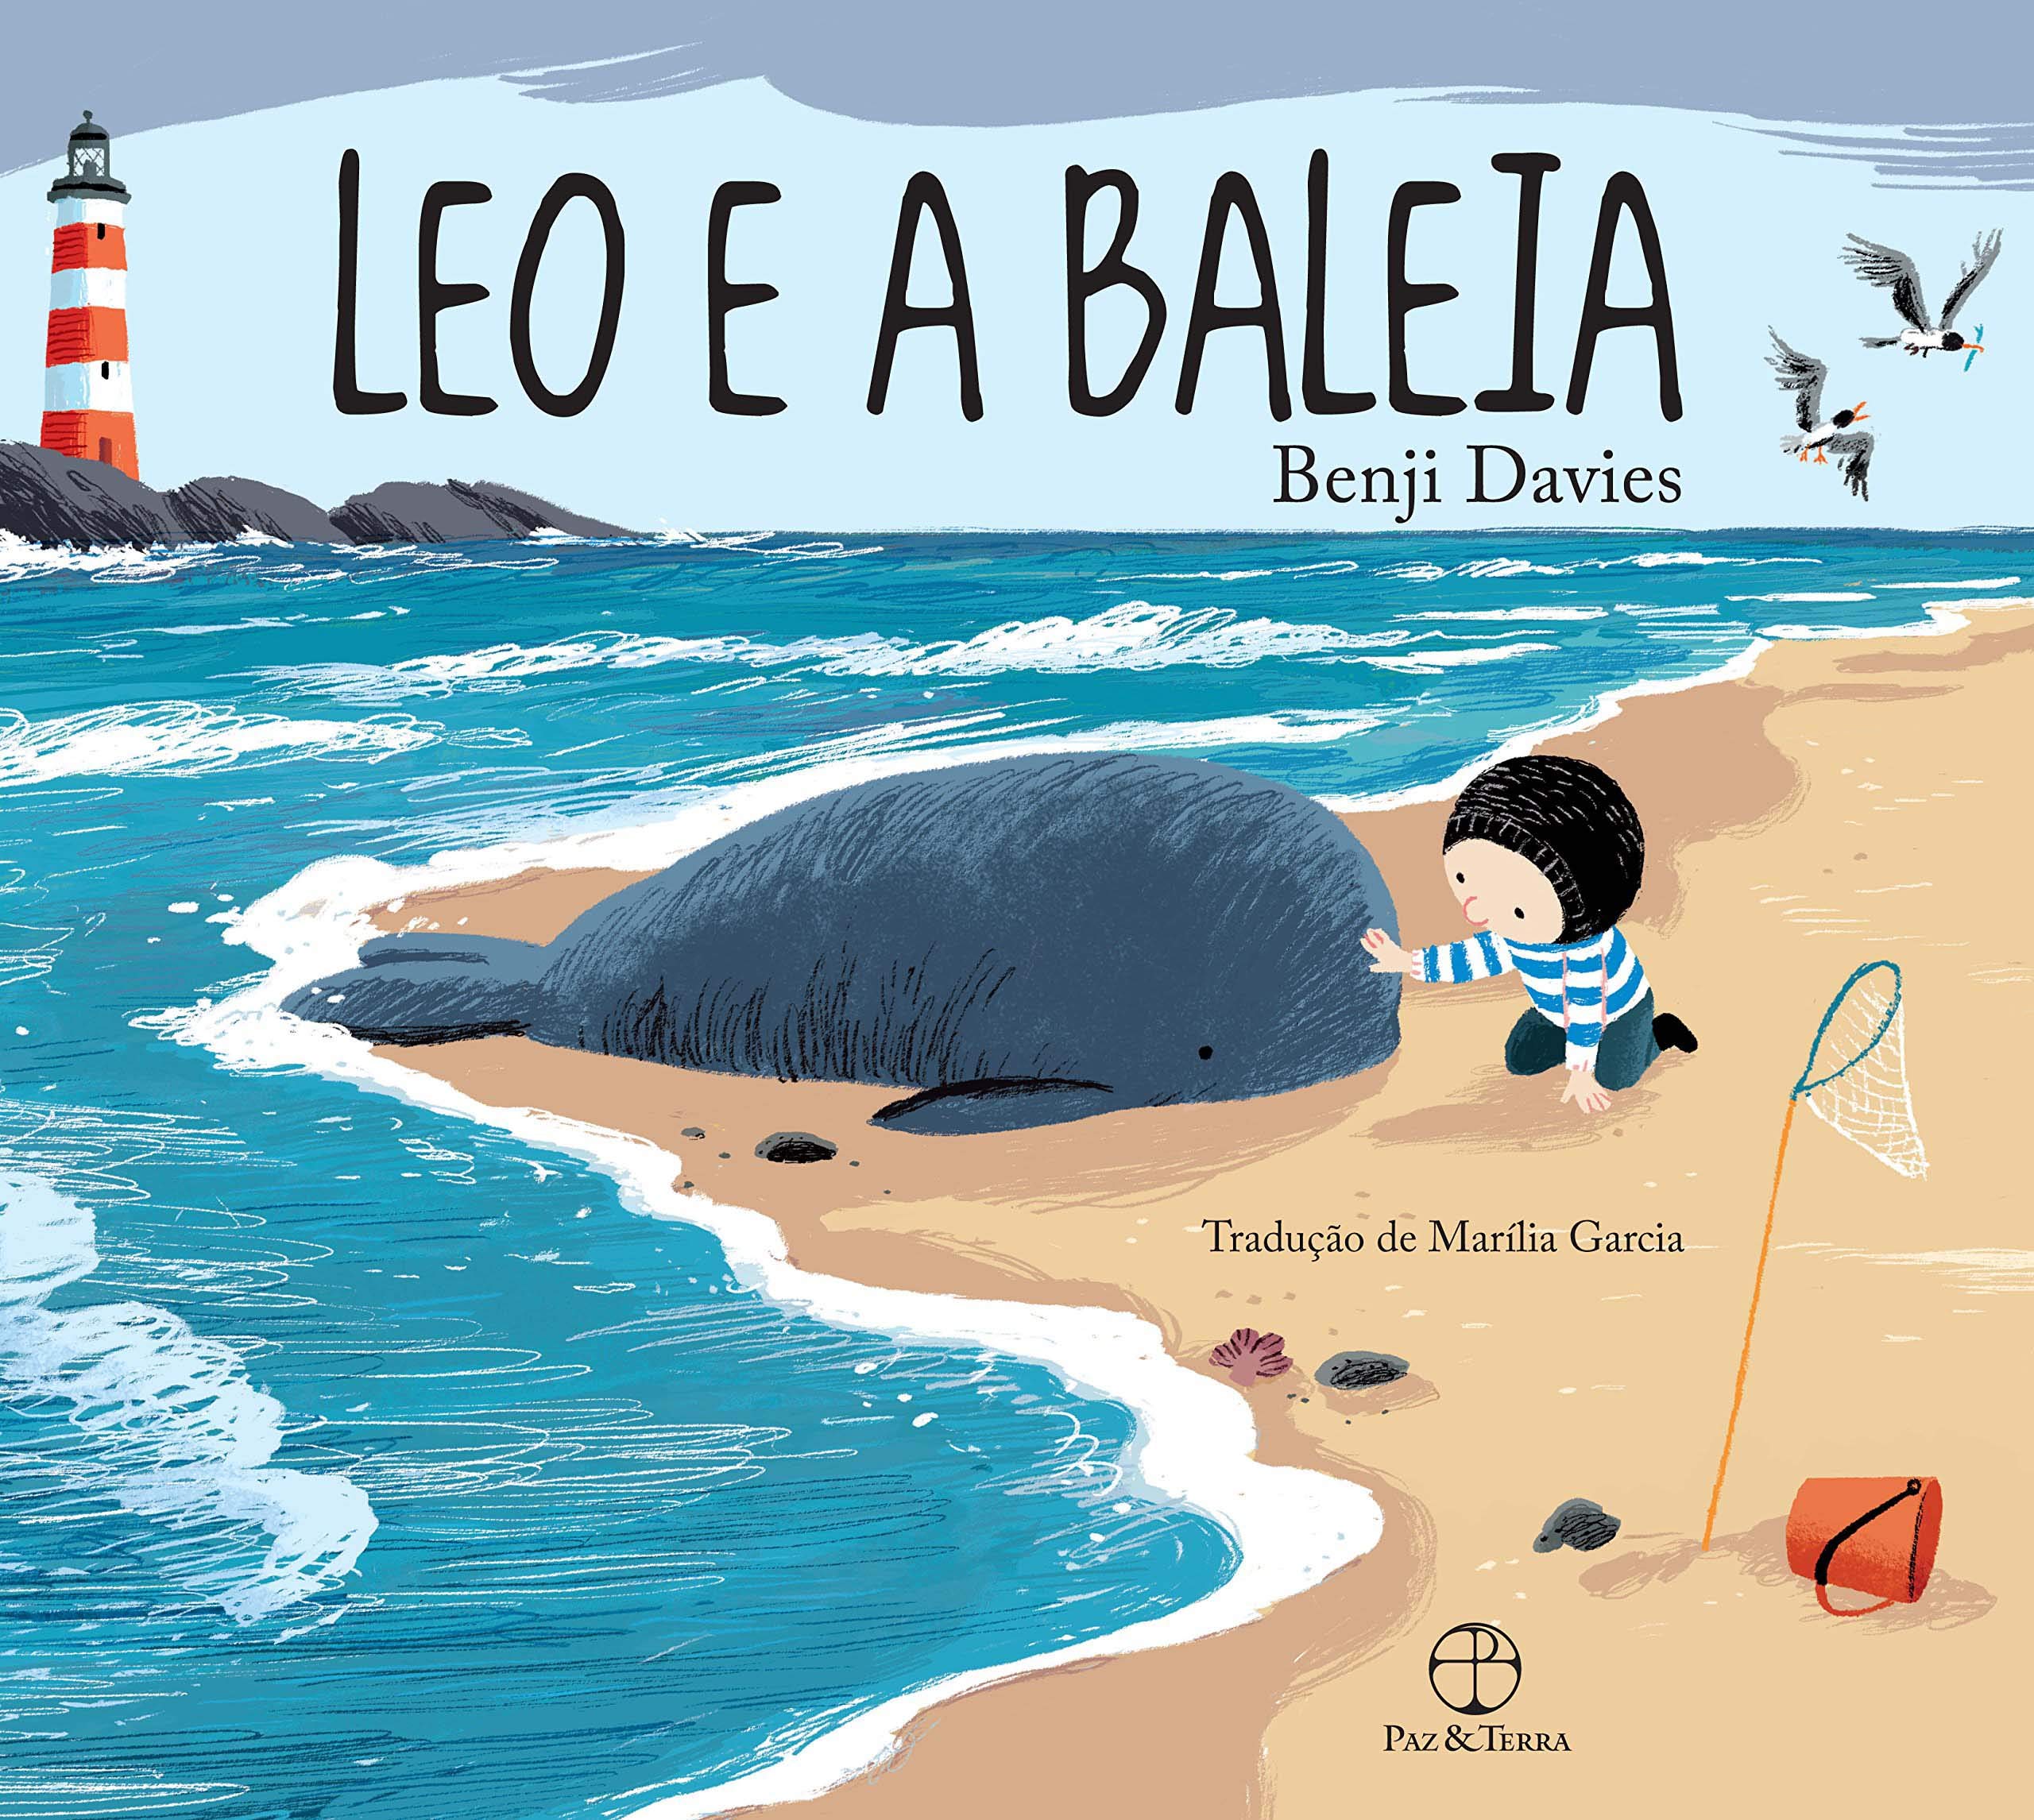 Capa do livro Léo e a Baleia" Benji Davies (texto e ilustrações) e Marília Garcia (tradução), imagem de um mar com uma baleia na areia e um menino